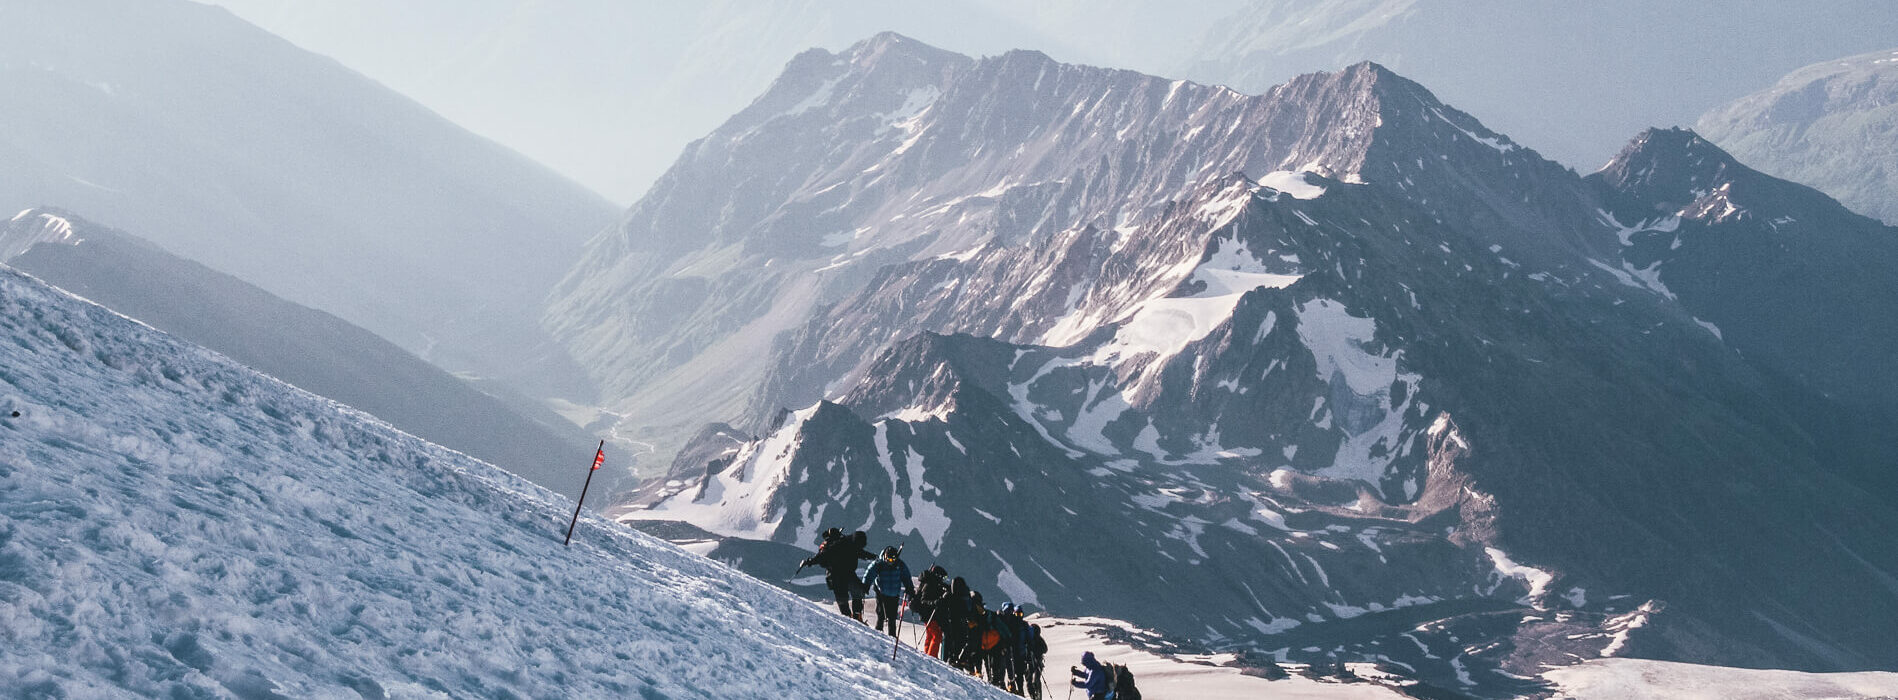 Elbrus with Earth's Edge 2